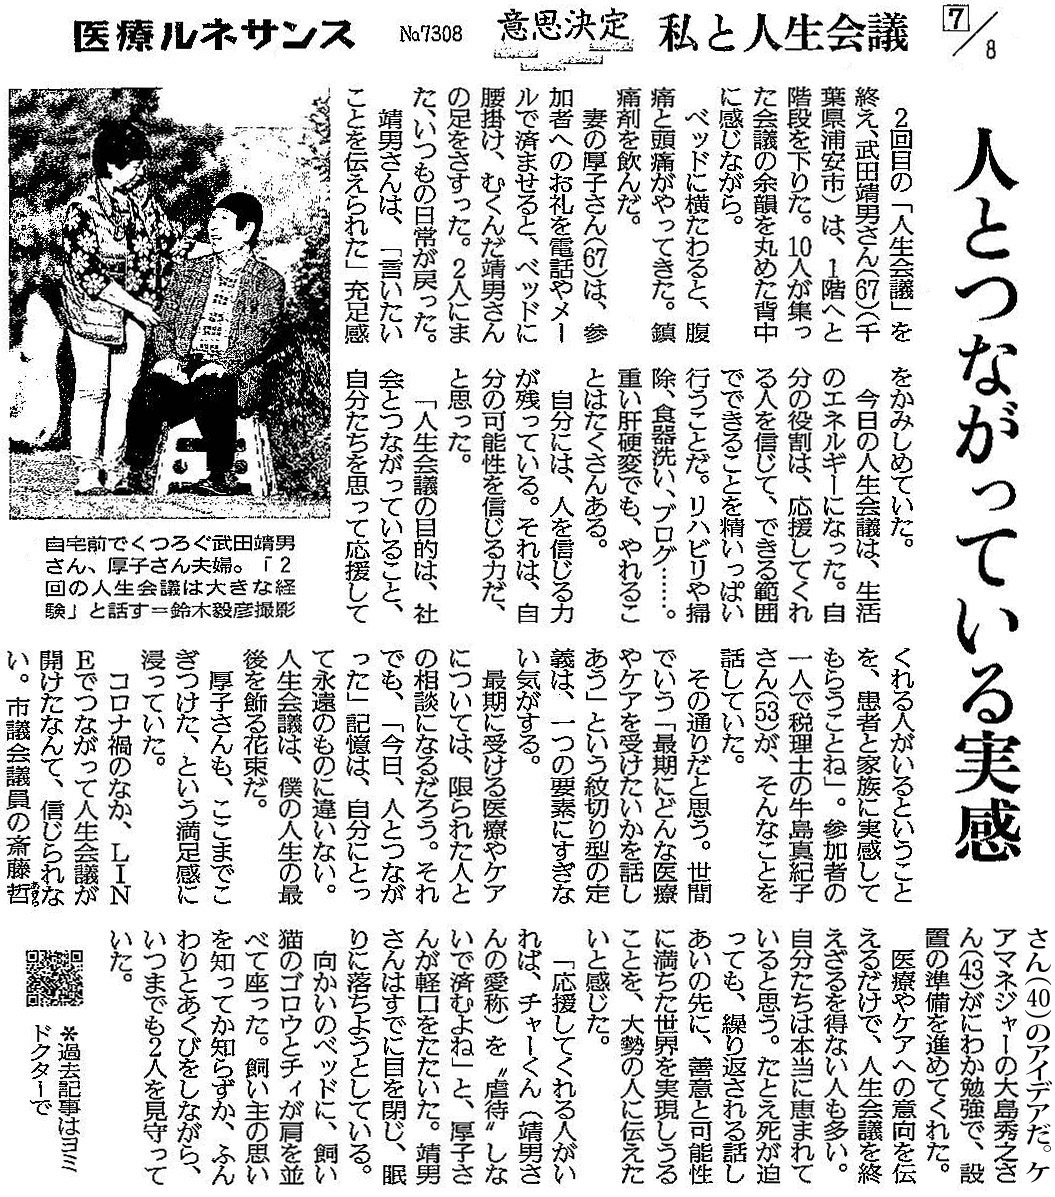 読売新聞 2020年6月22日 掲載記事